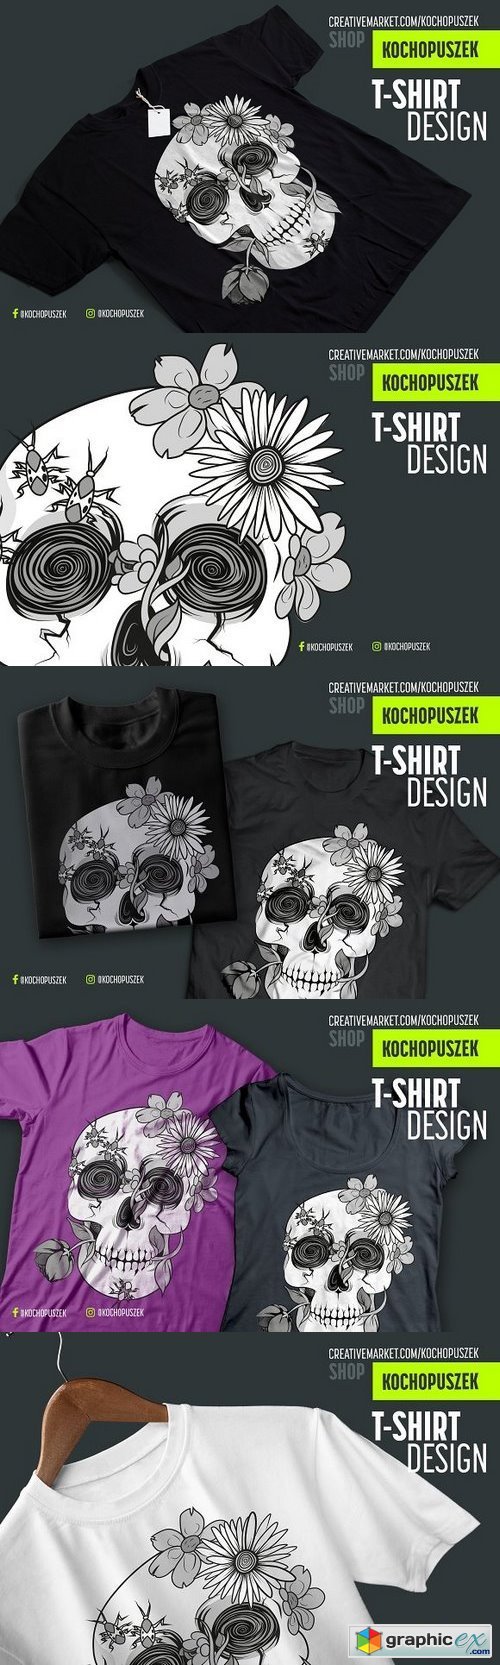 Skull T-shirt design